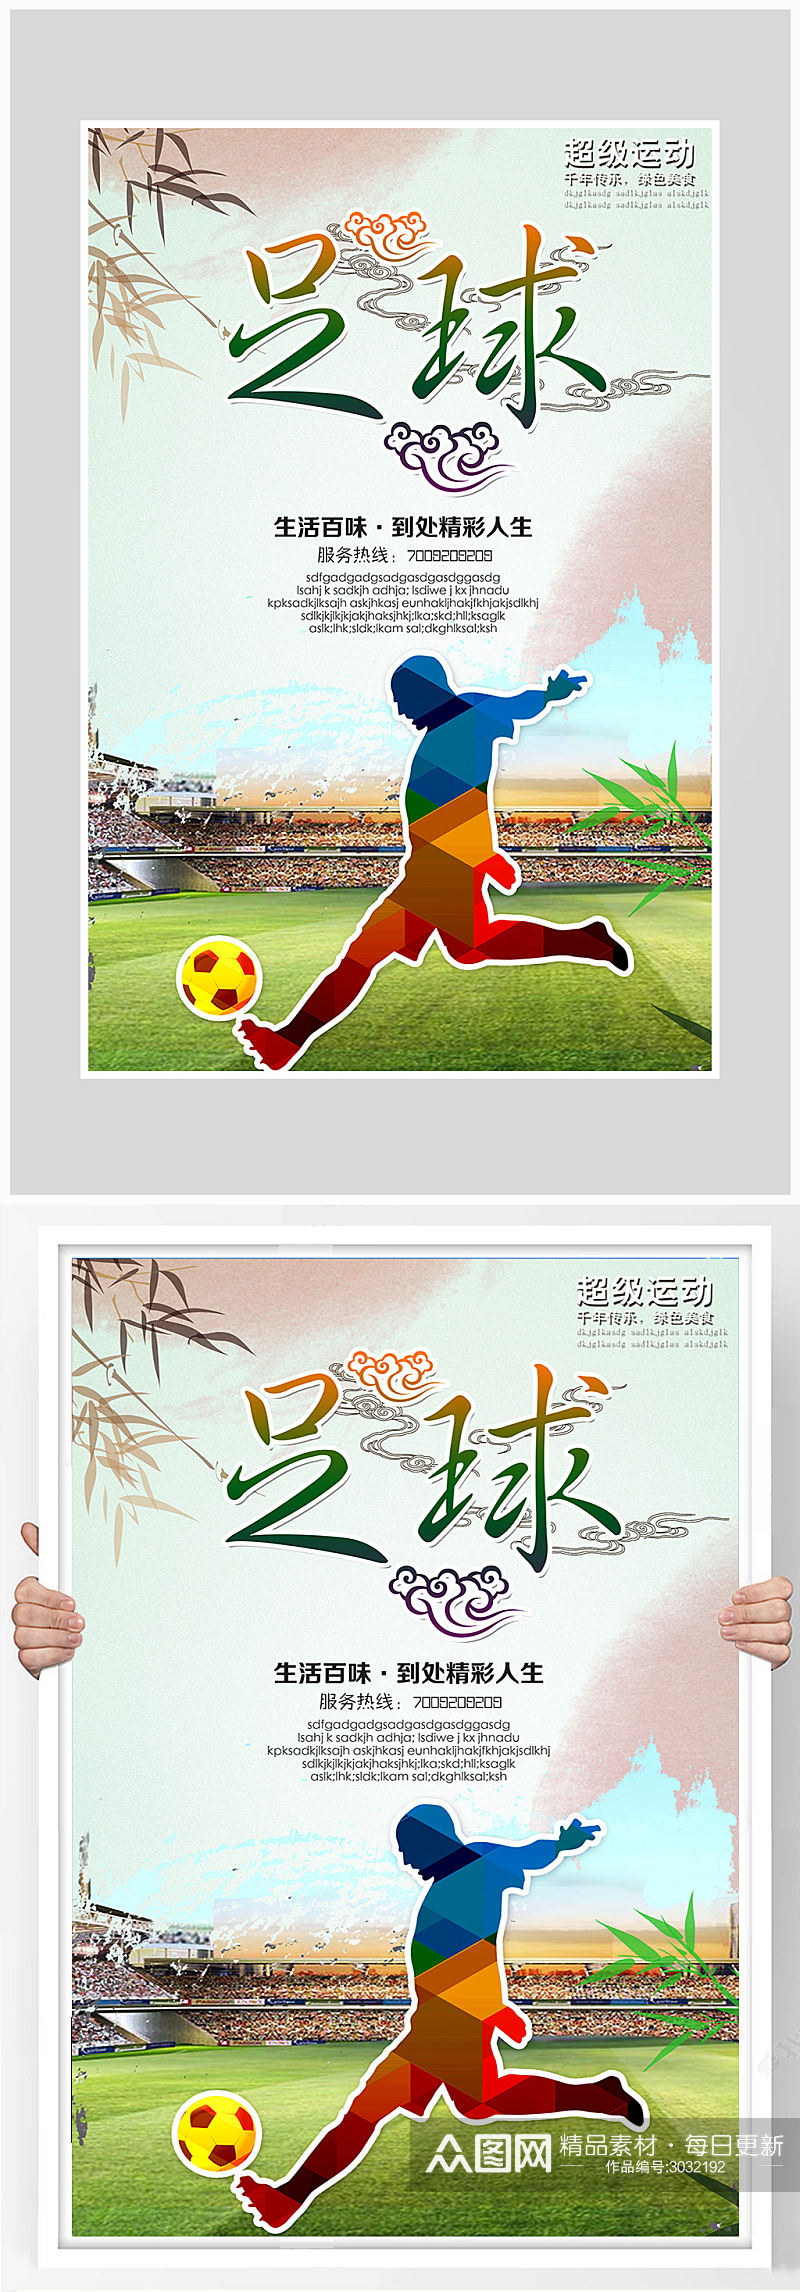 卡通足球比赛训练海报设计素材